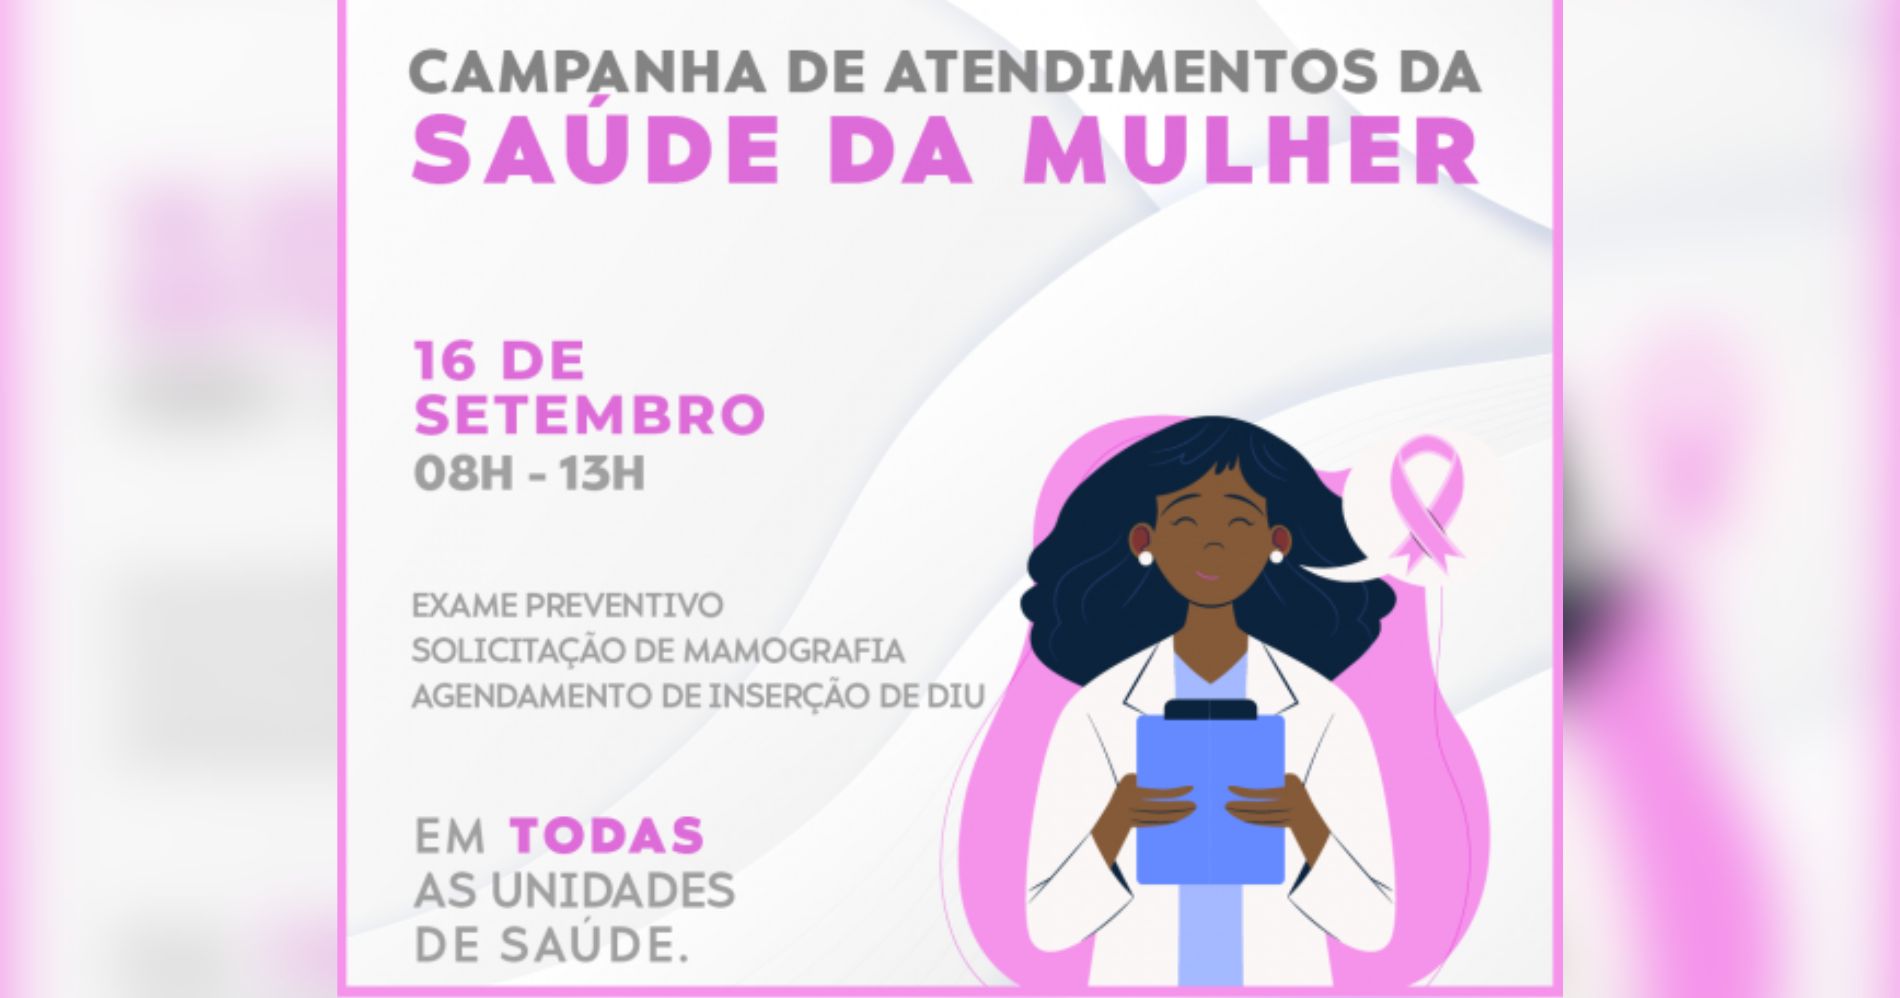 Prefeitura de Piraquara oferece atendimentos de saúde da mulher neste sábado (16)